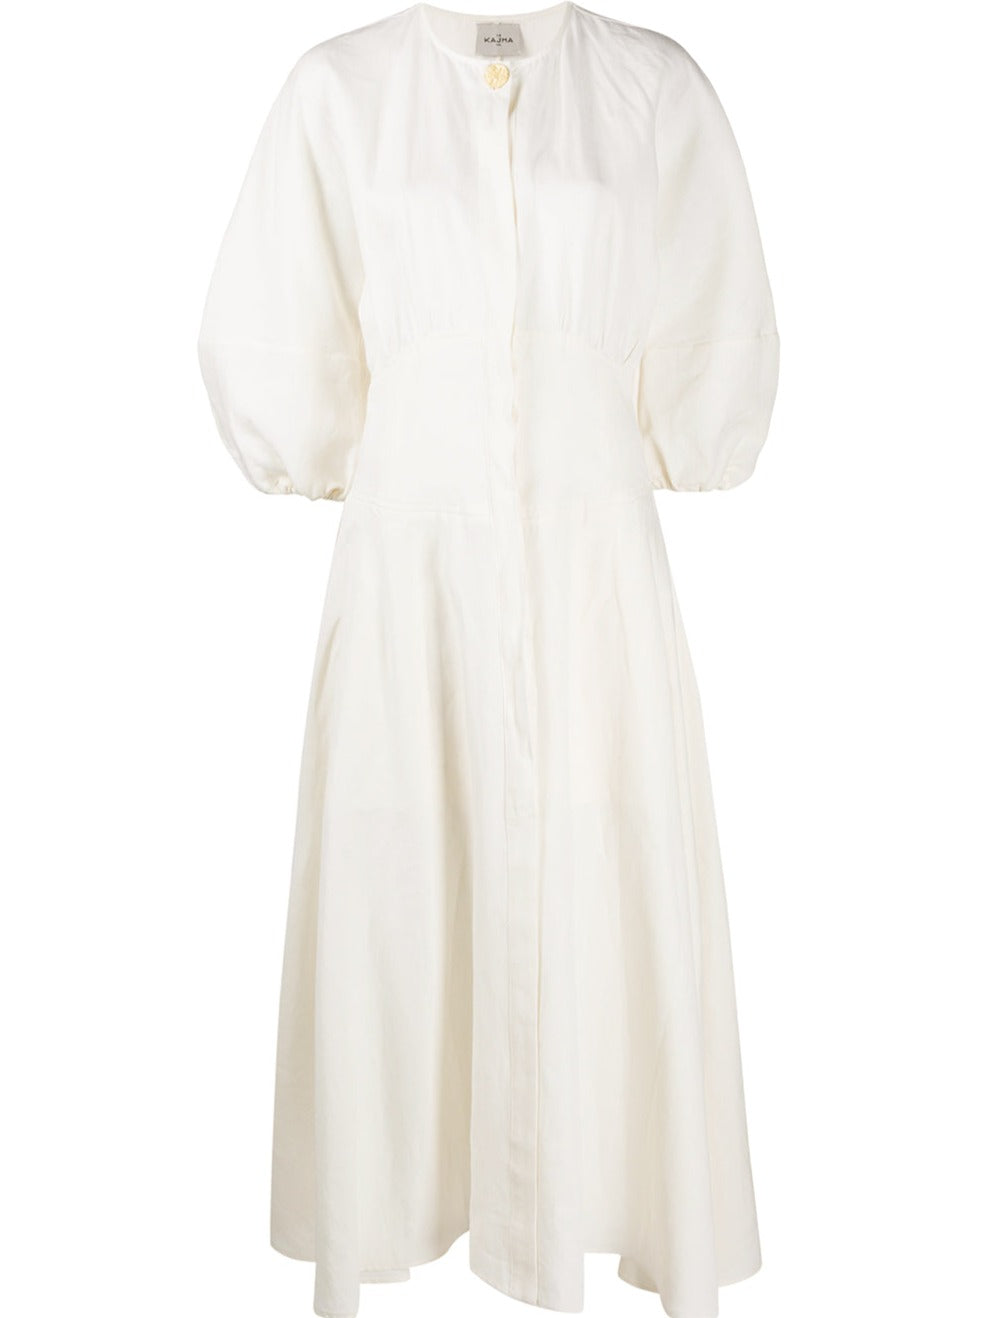 NTG Fad DRESS CREAM / XS HELWAN linen dress-(Hand Made)